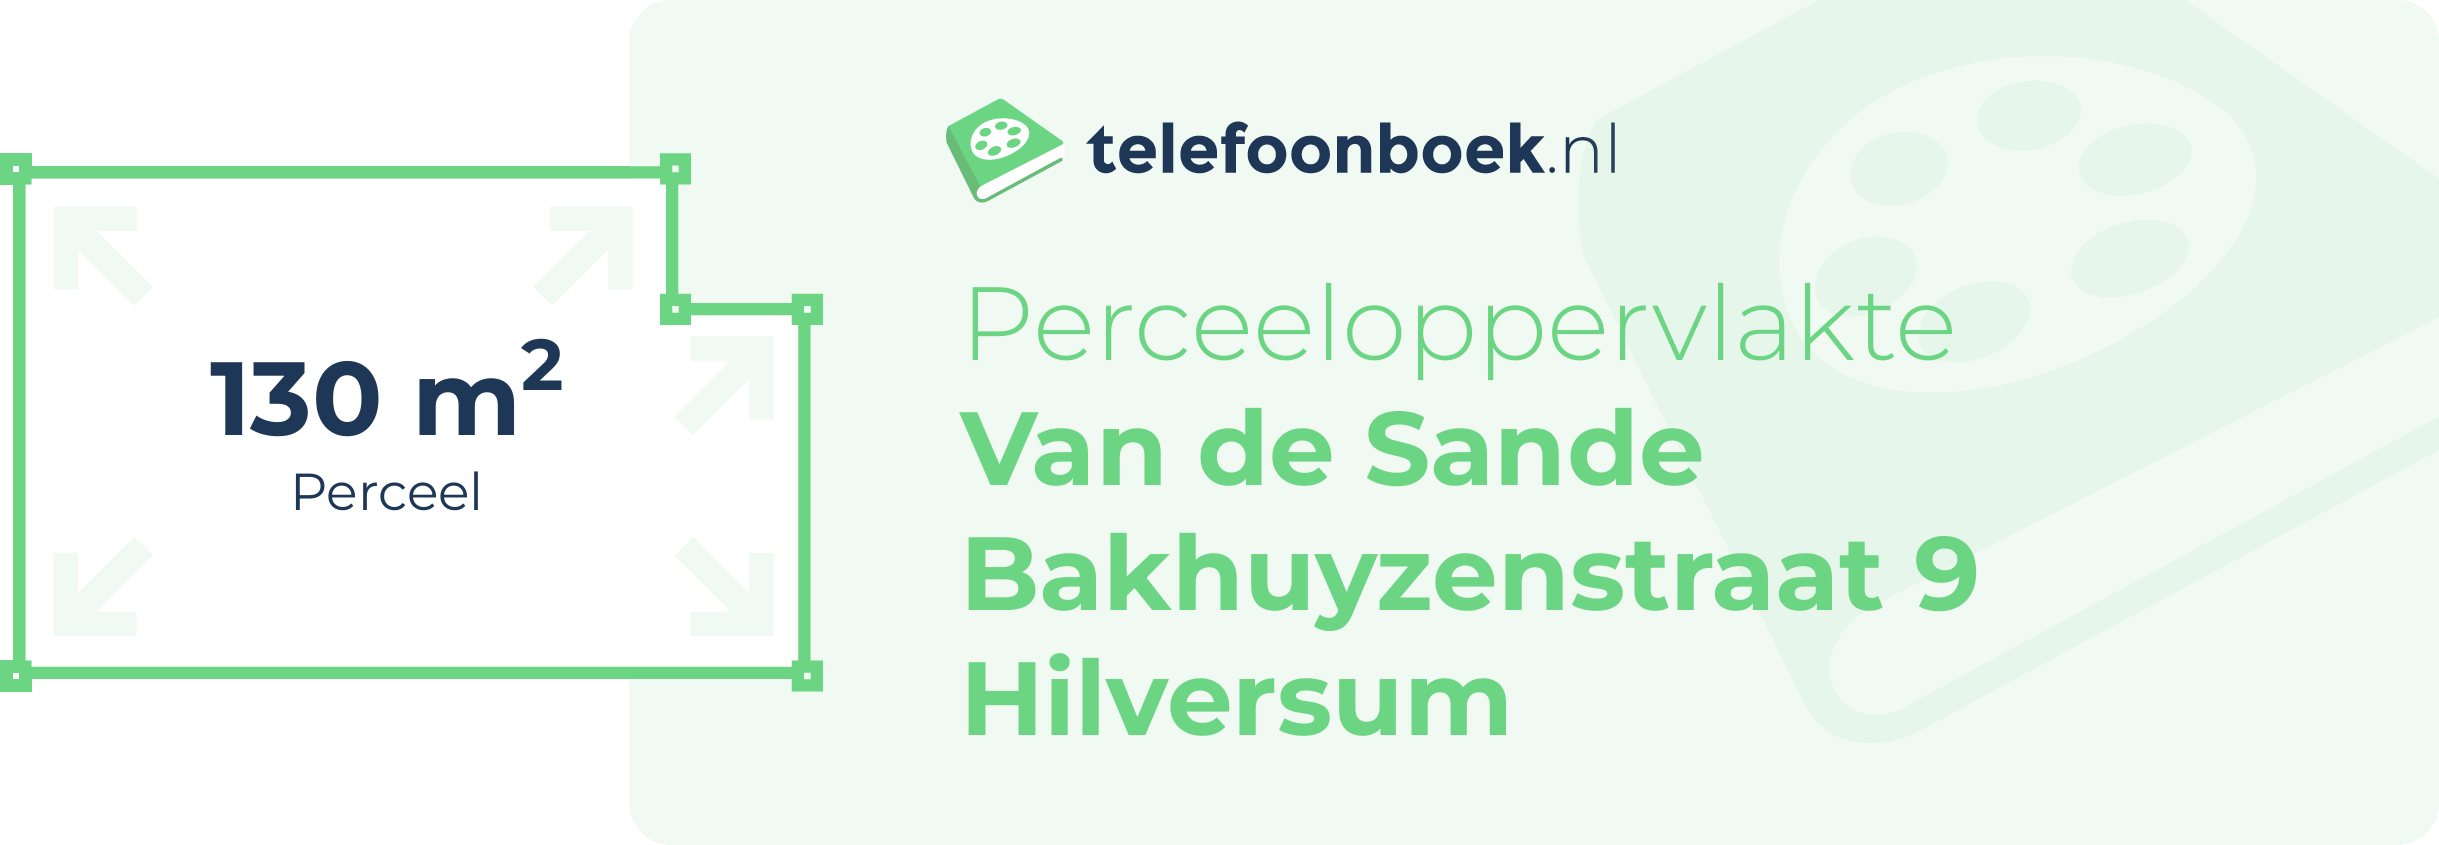 Perceeloppervlakte Van De Sande Bakhuyzenstraat 9 Hilversum